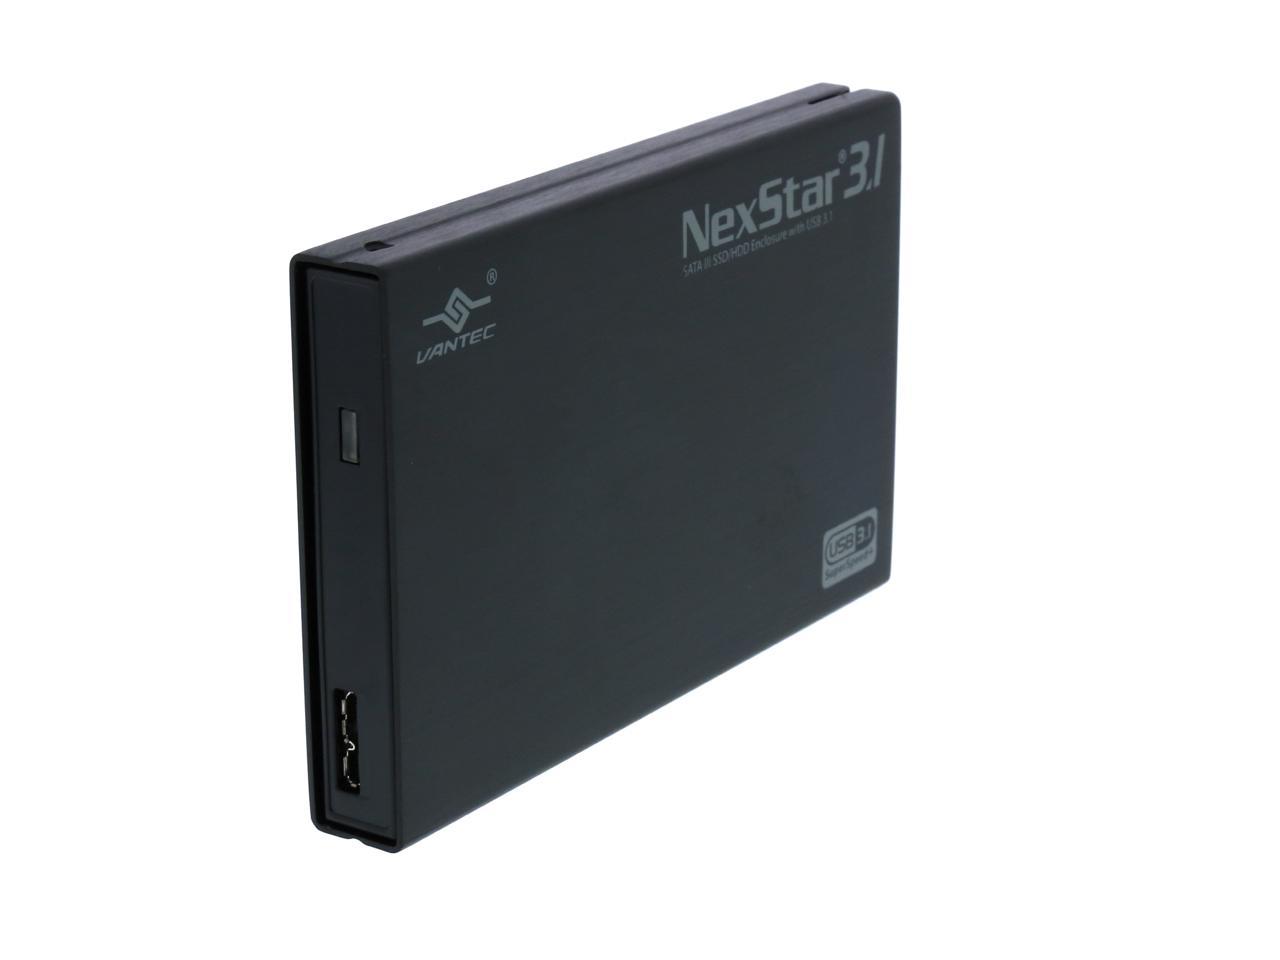 Vantec NexStar NST-270A31-BK 2.5 inch SATA3 to USB 3.1 External Hard Drive 